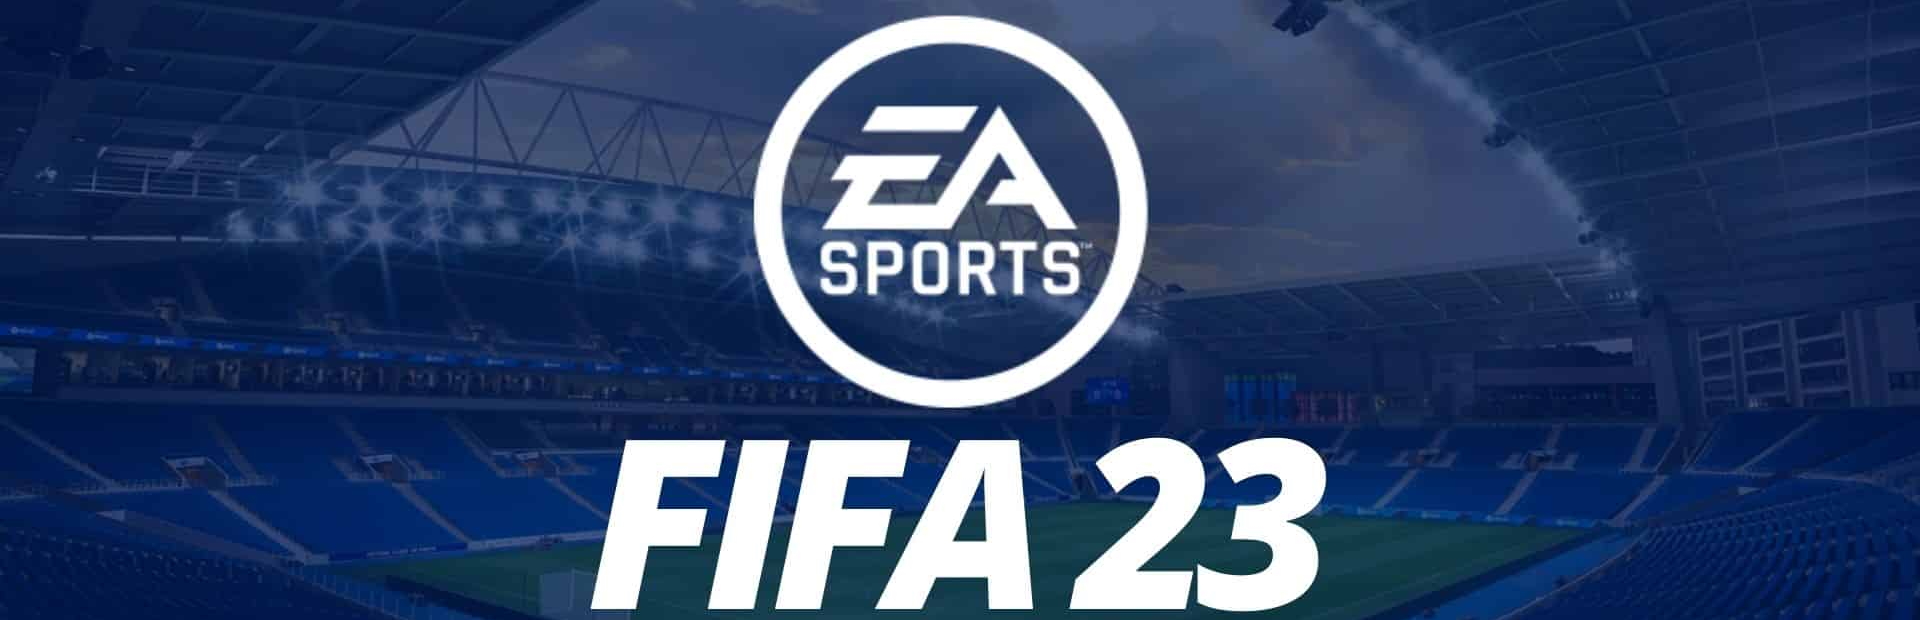 دانلود بازی FIFA 23 برای پی سی | گیمباتو